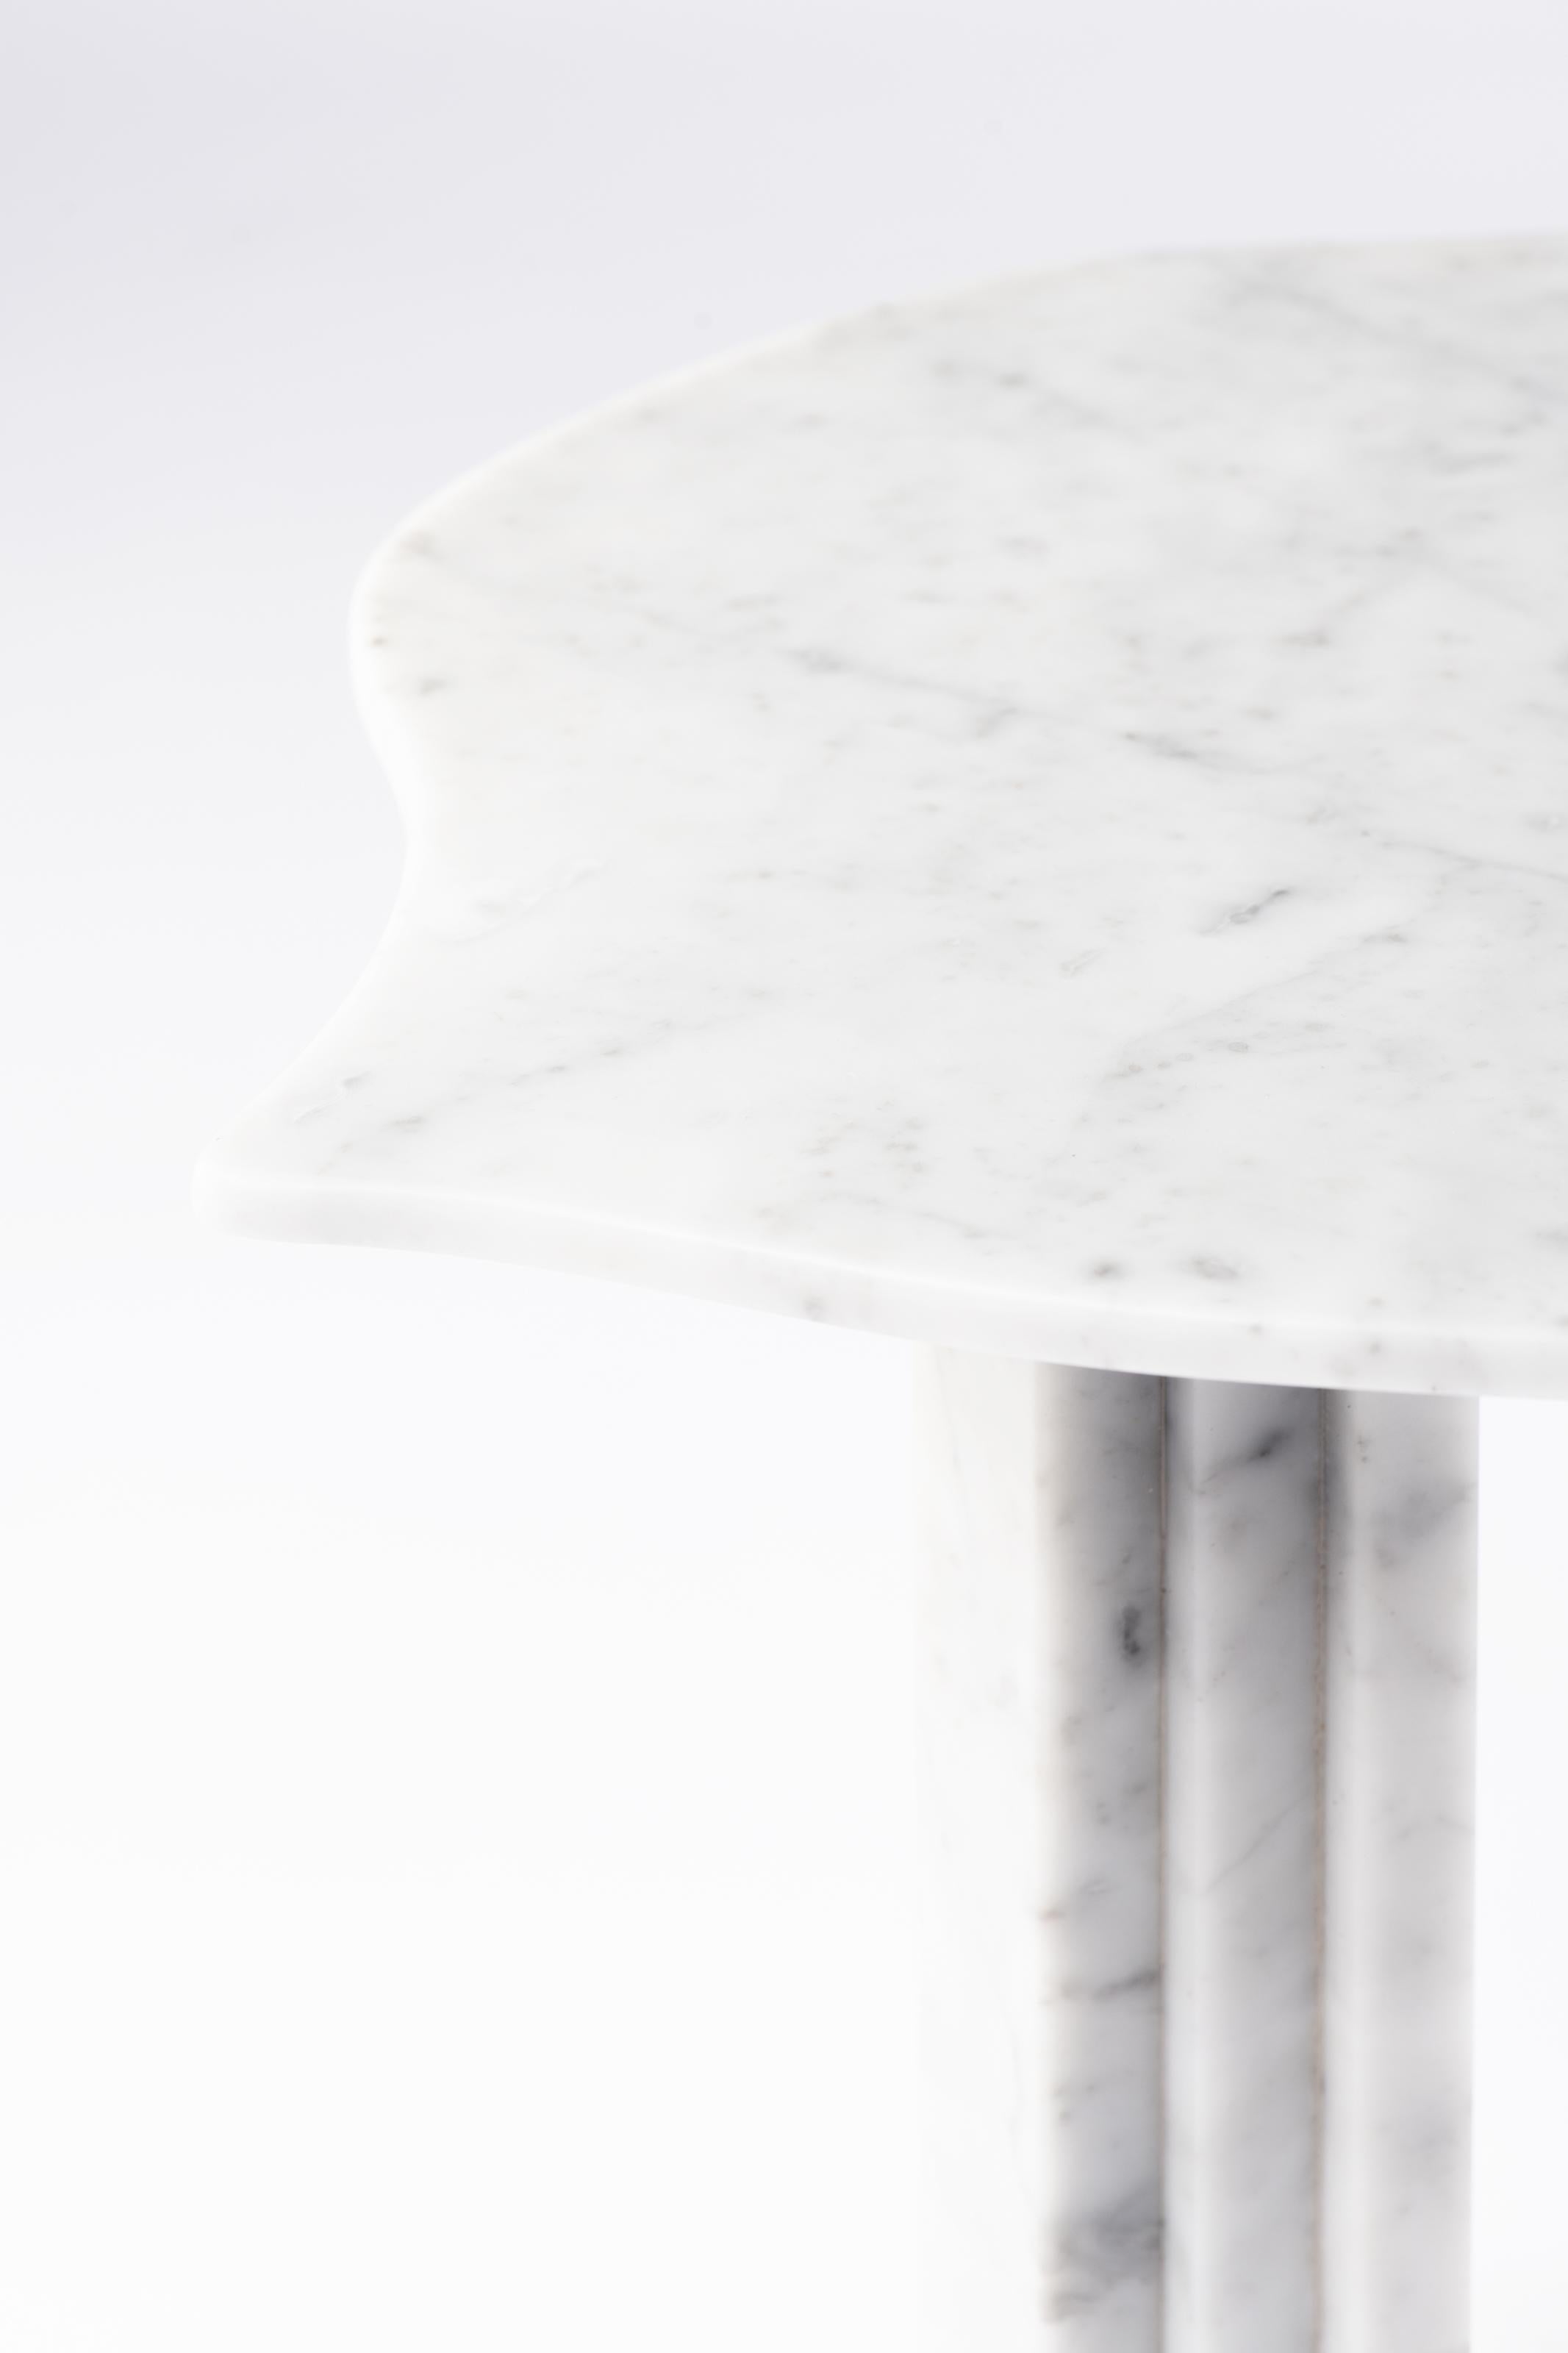 Italian Sculptural White Marble Table, Lorenzo Bini